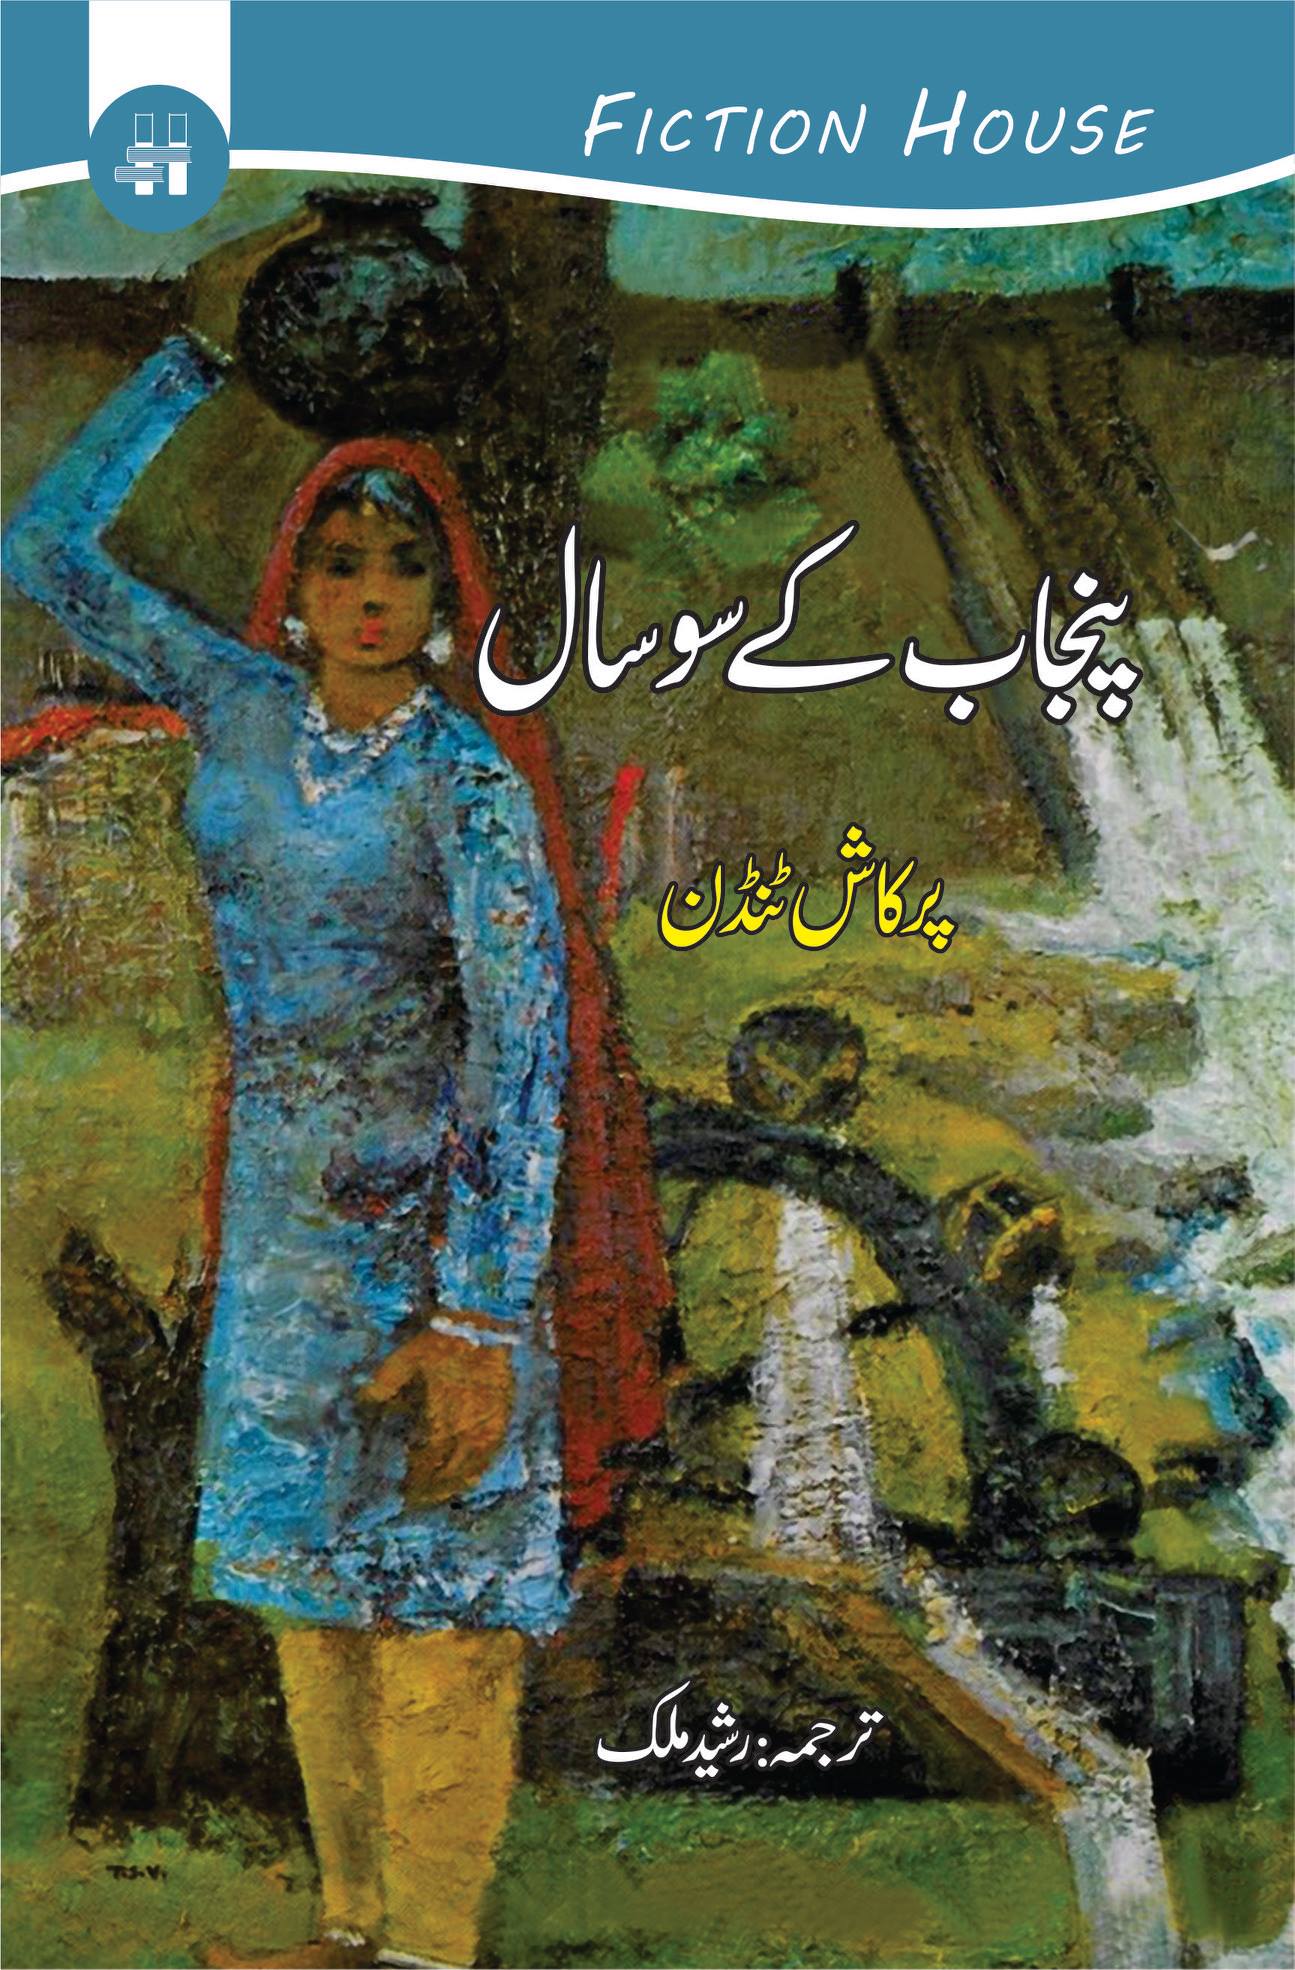 پنجاب کے سوسال | Punjabi century, 1857-1947 Fiction House